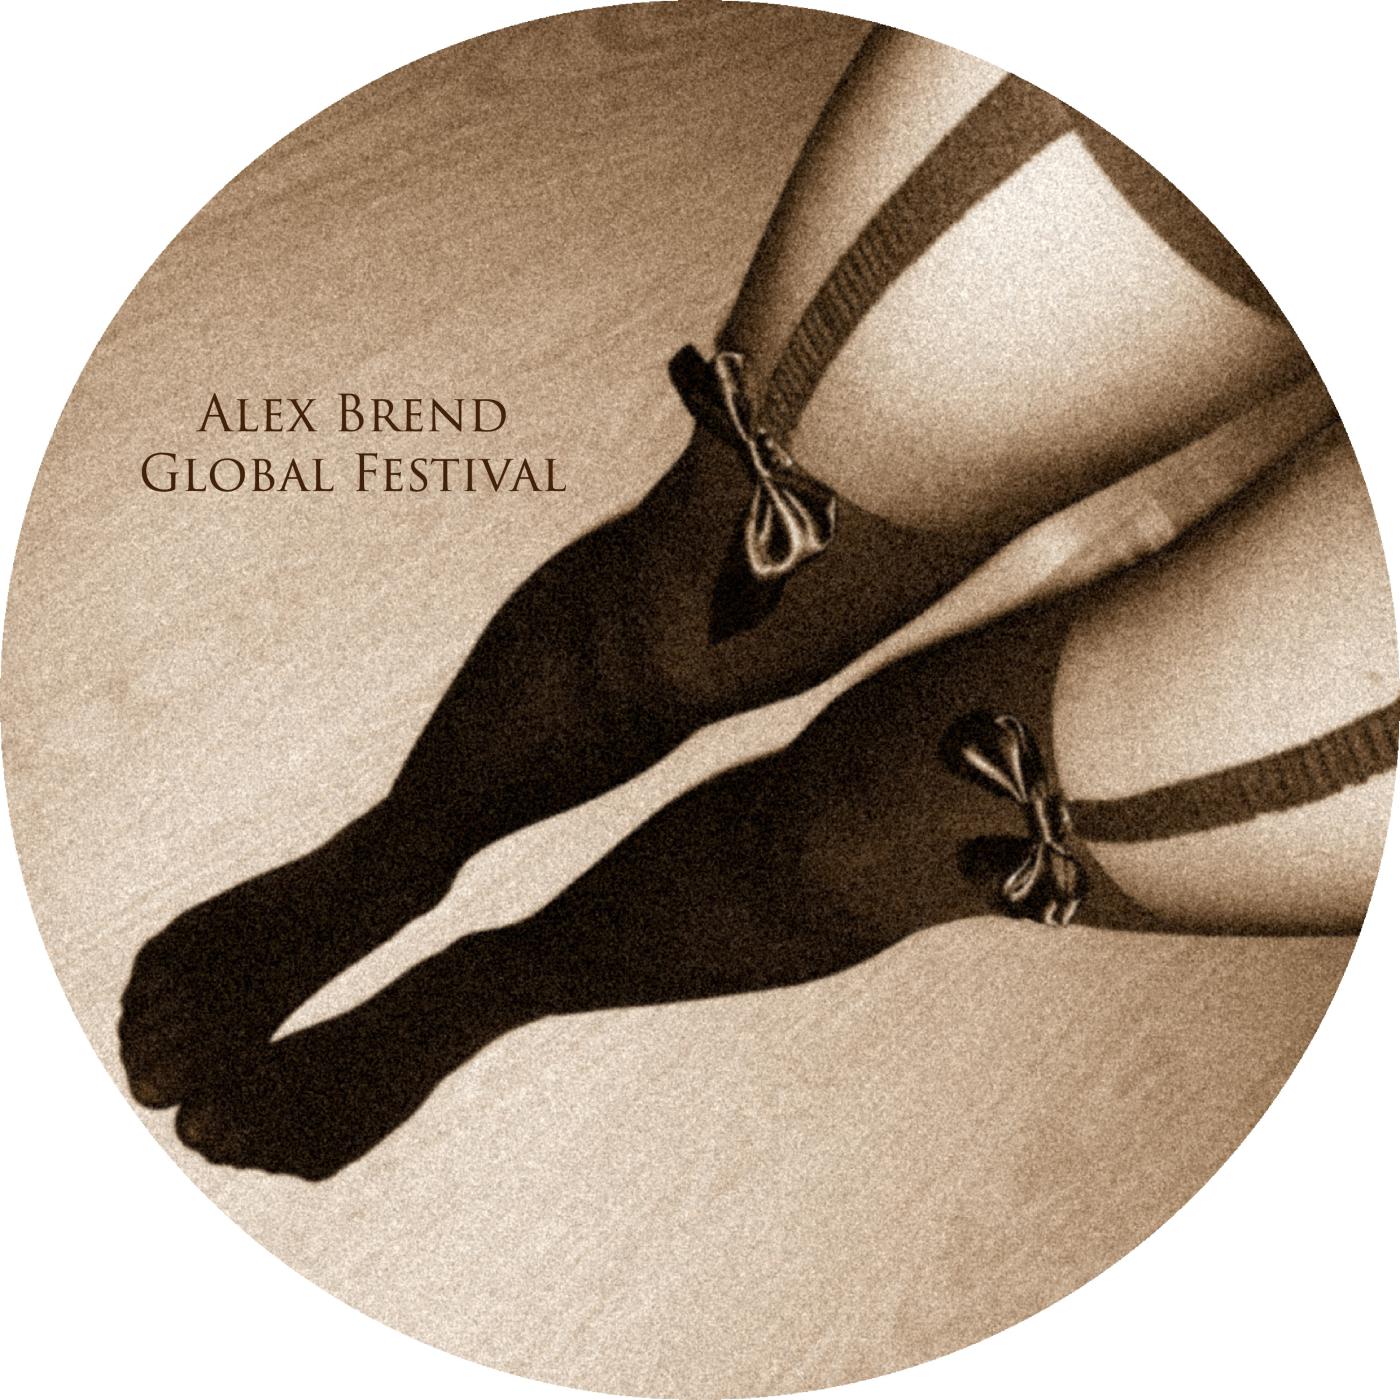 Global Festival